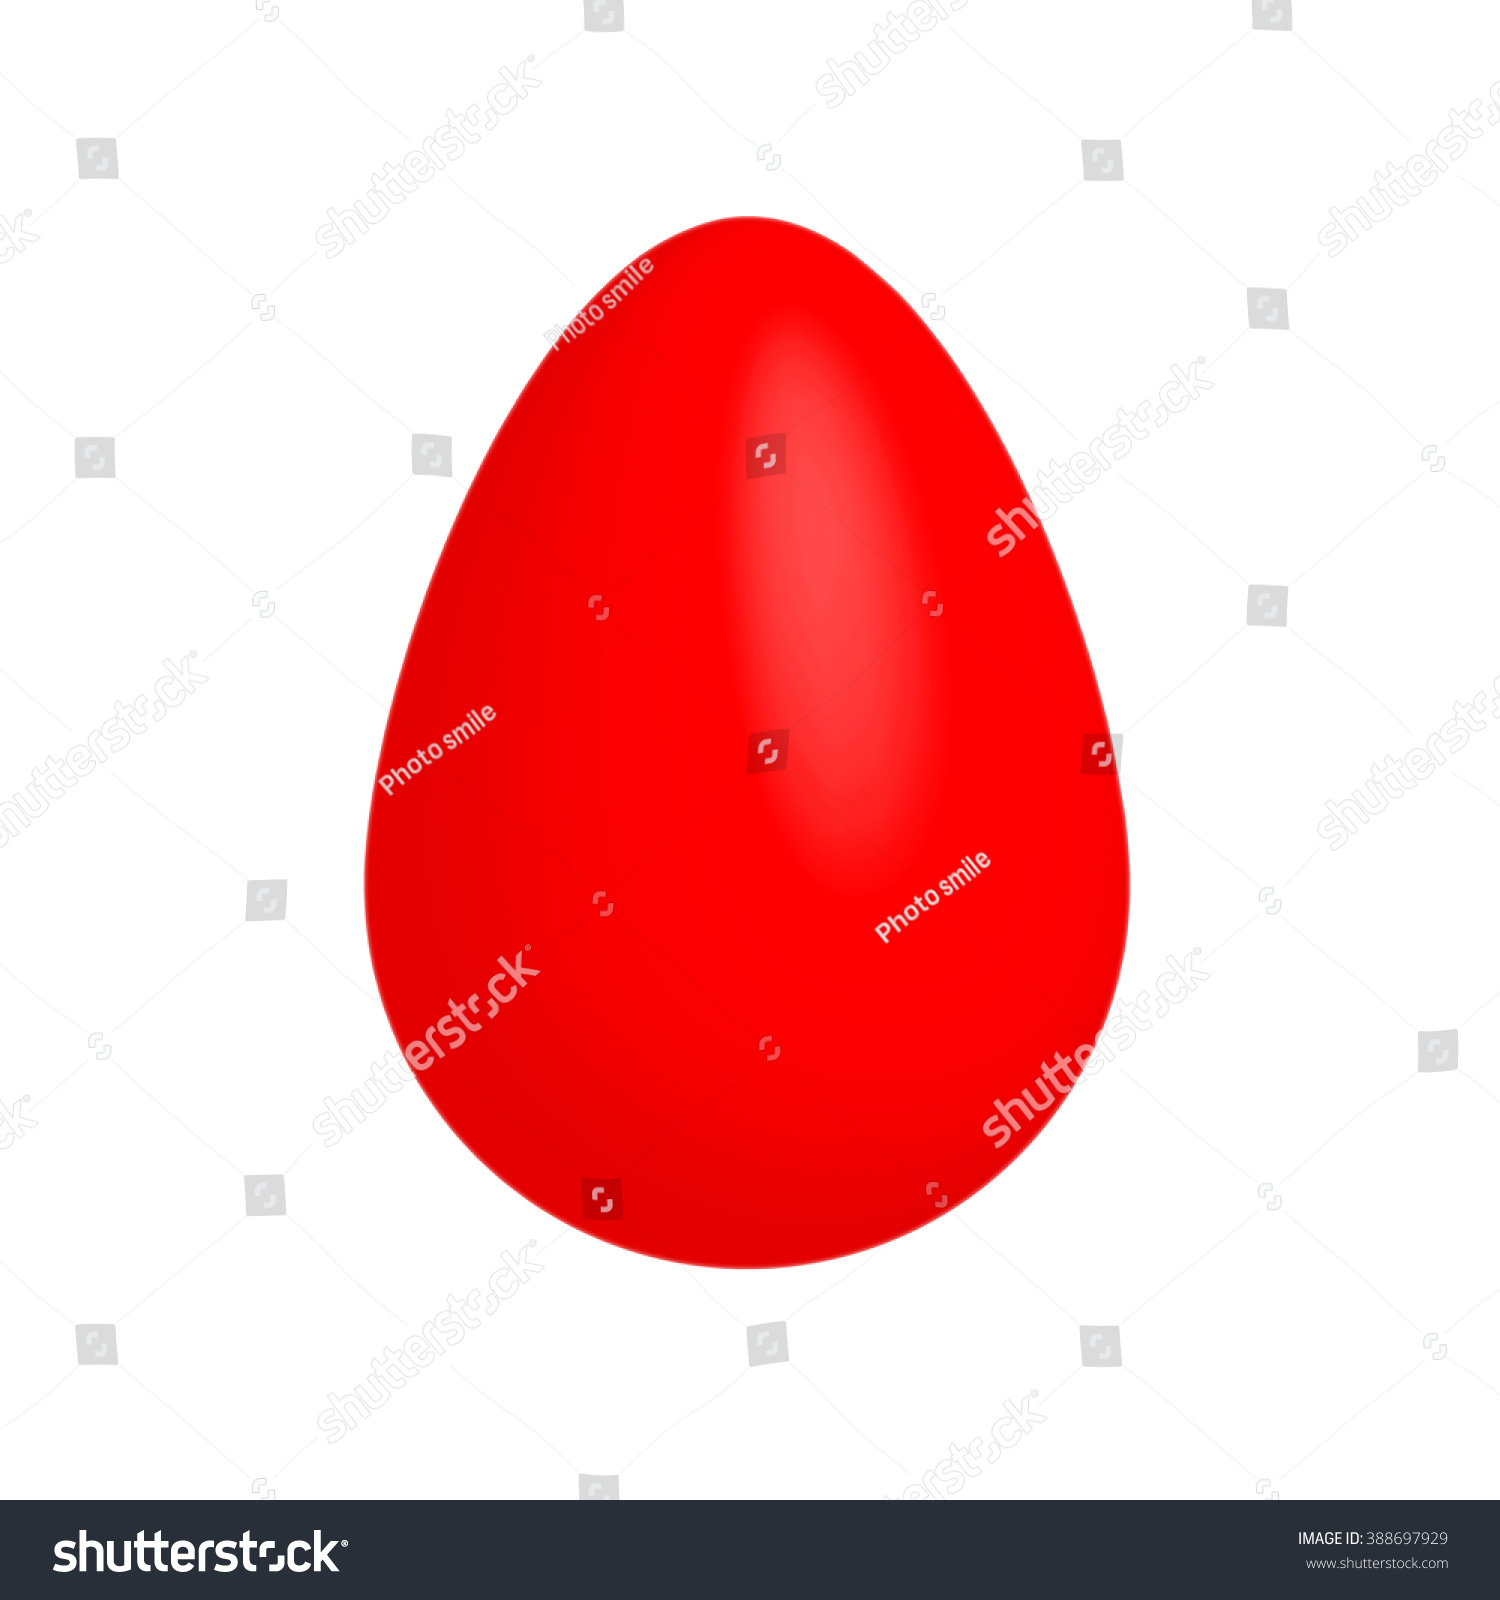 Red egg on white background #388697929